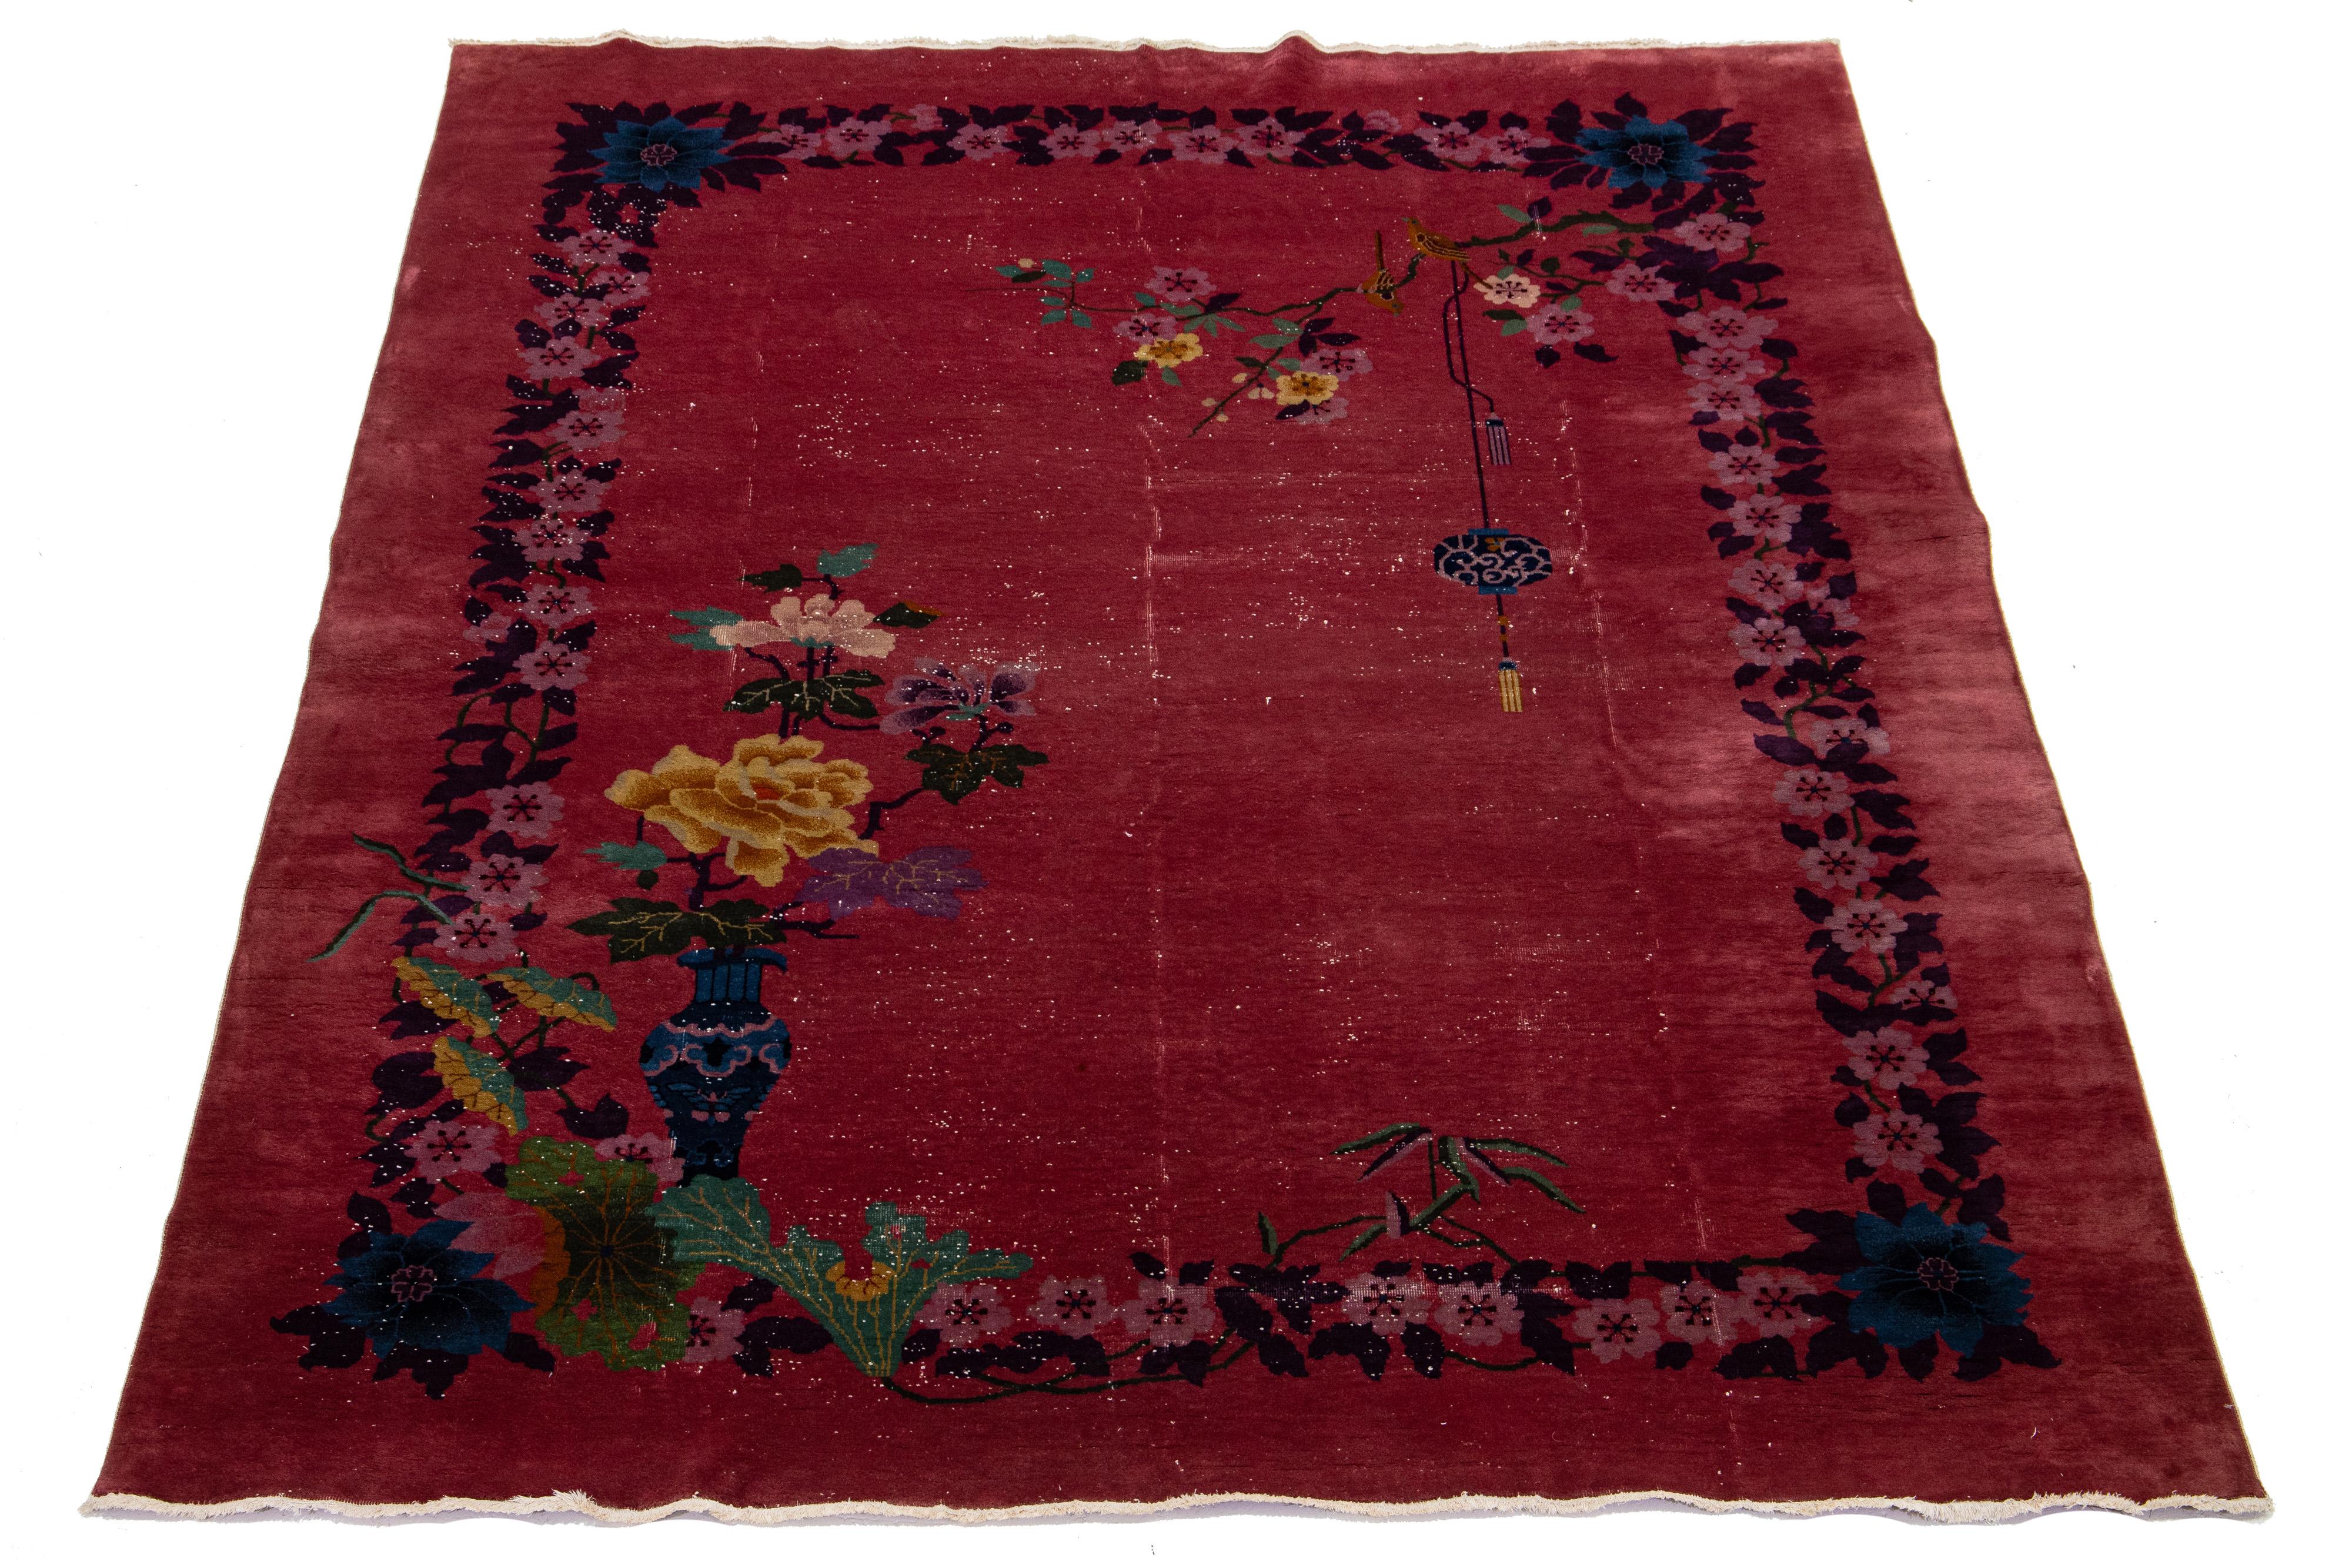 Dies ist ein antiker chinesischer Art-Deco-Teppich! Er ist aus Wolle handgeknüpft und zeichnet sich durch ein kräftiges rotes Feld und auffällige mehrfarbige Farbtöne aus. Der Teppich ist mit einem klassischen chinesischen Blumenmuster